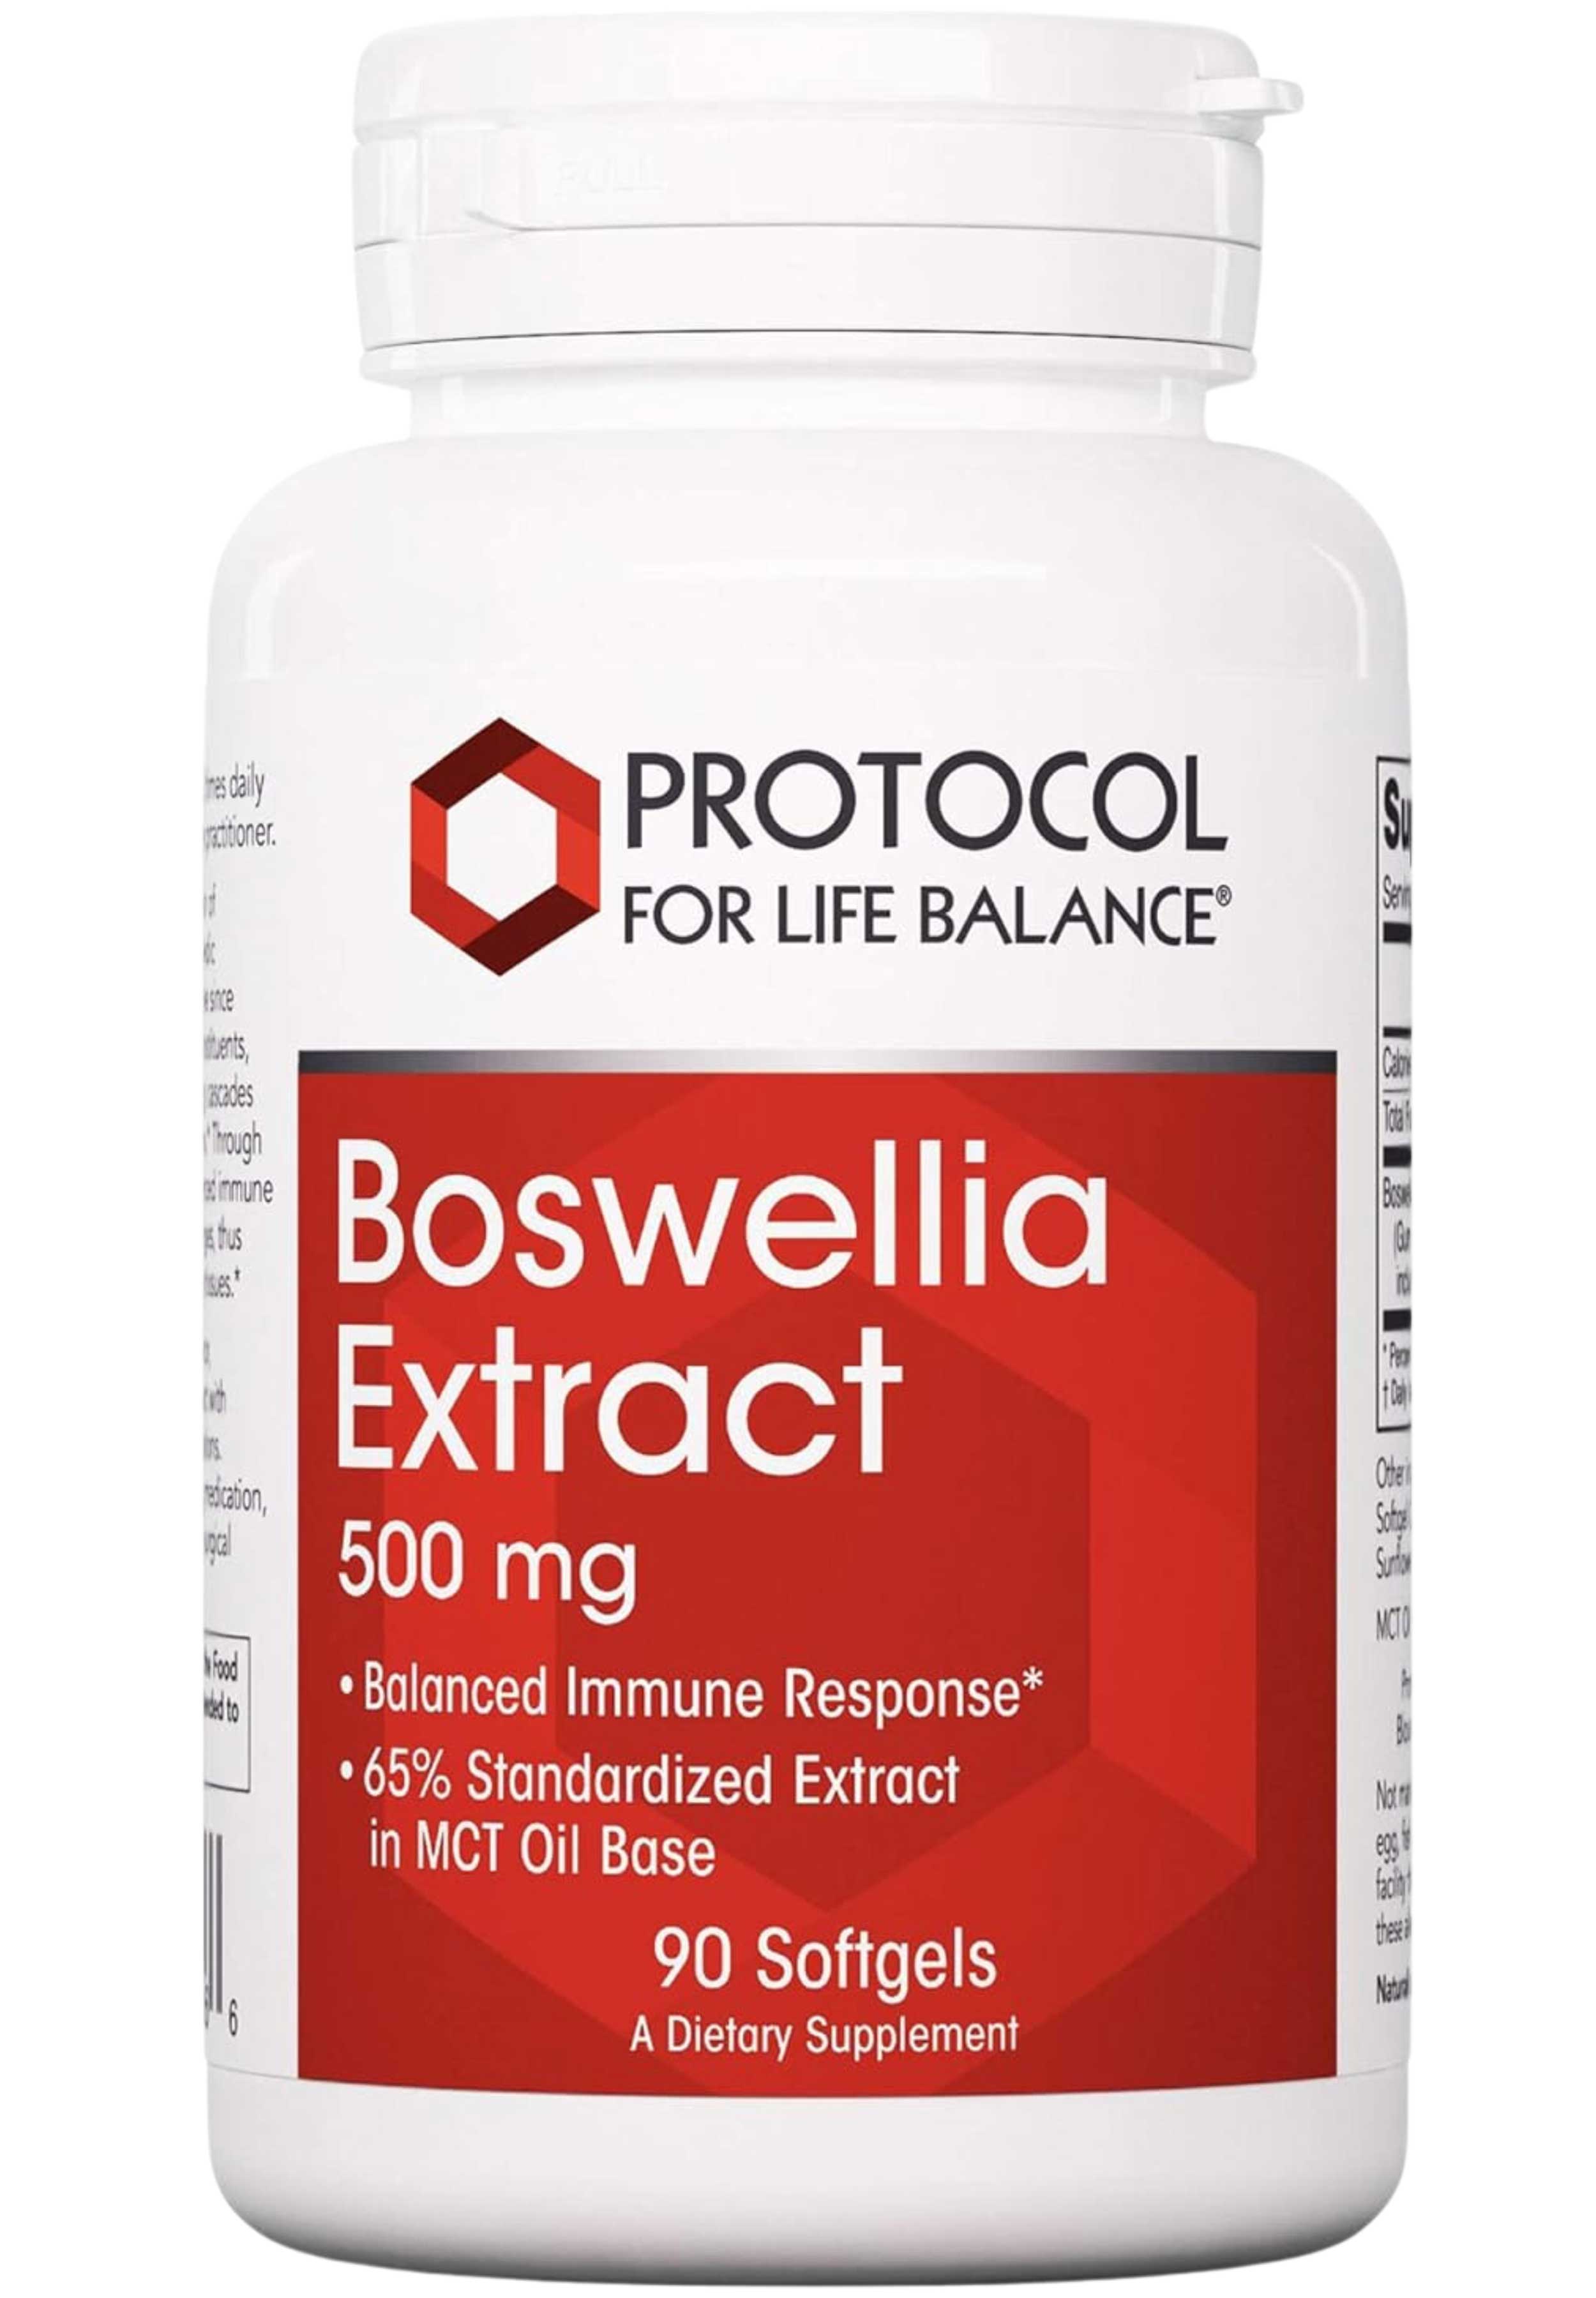 Protocol for Life Balance Boswellia Extract 500 mg